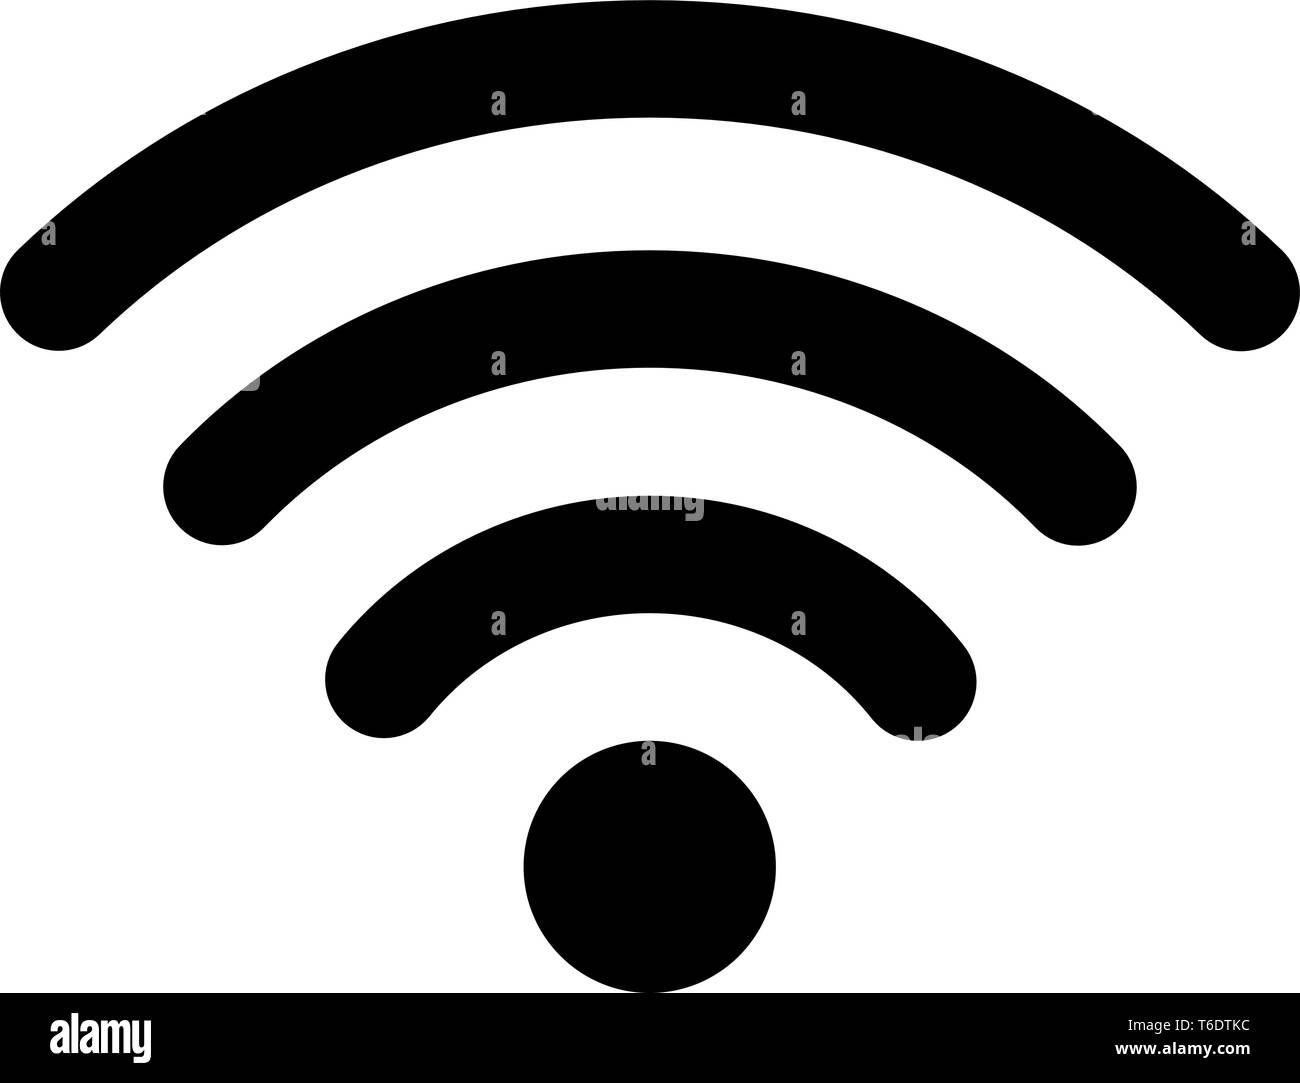 Router punto de acceso wifi - Descarga iconos gratis